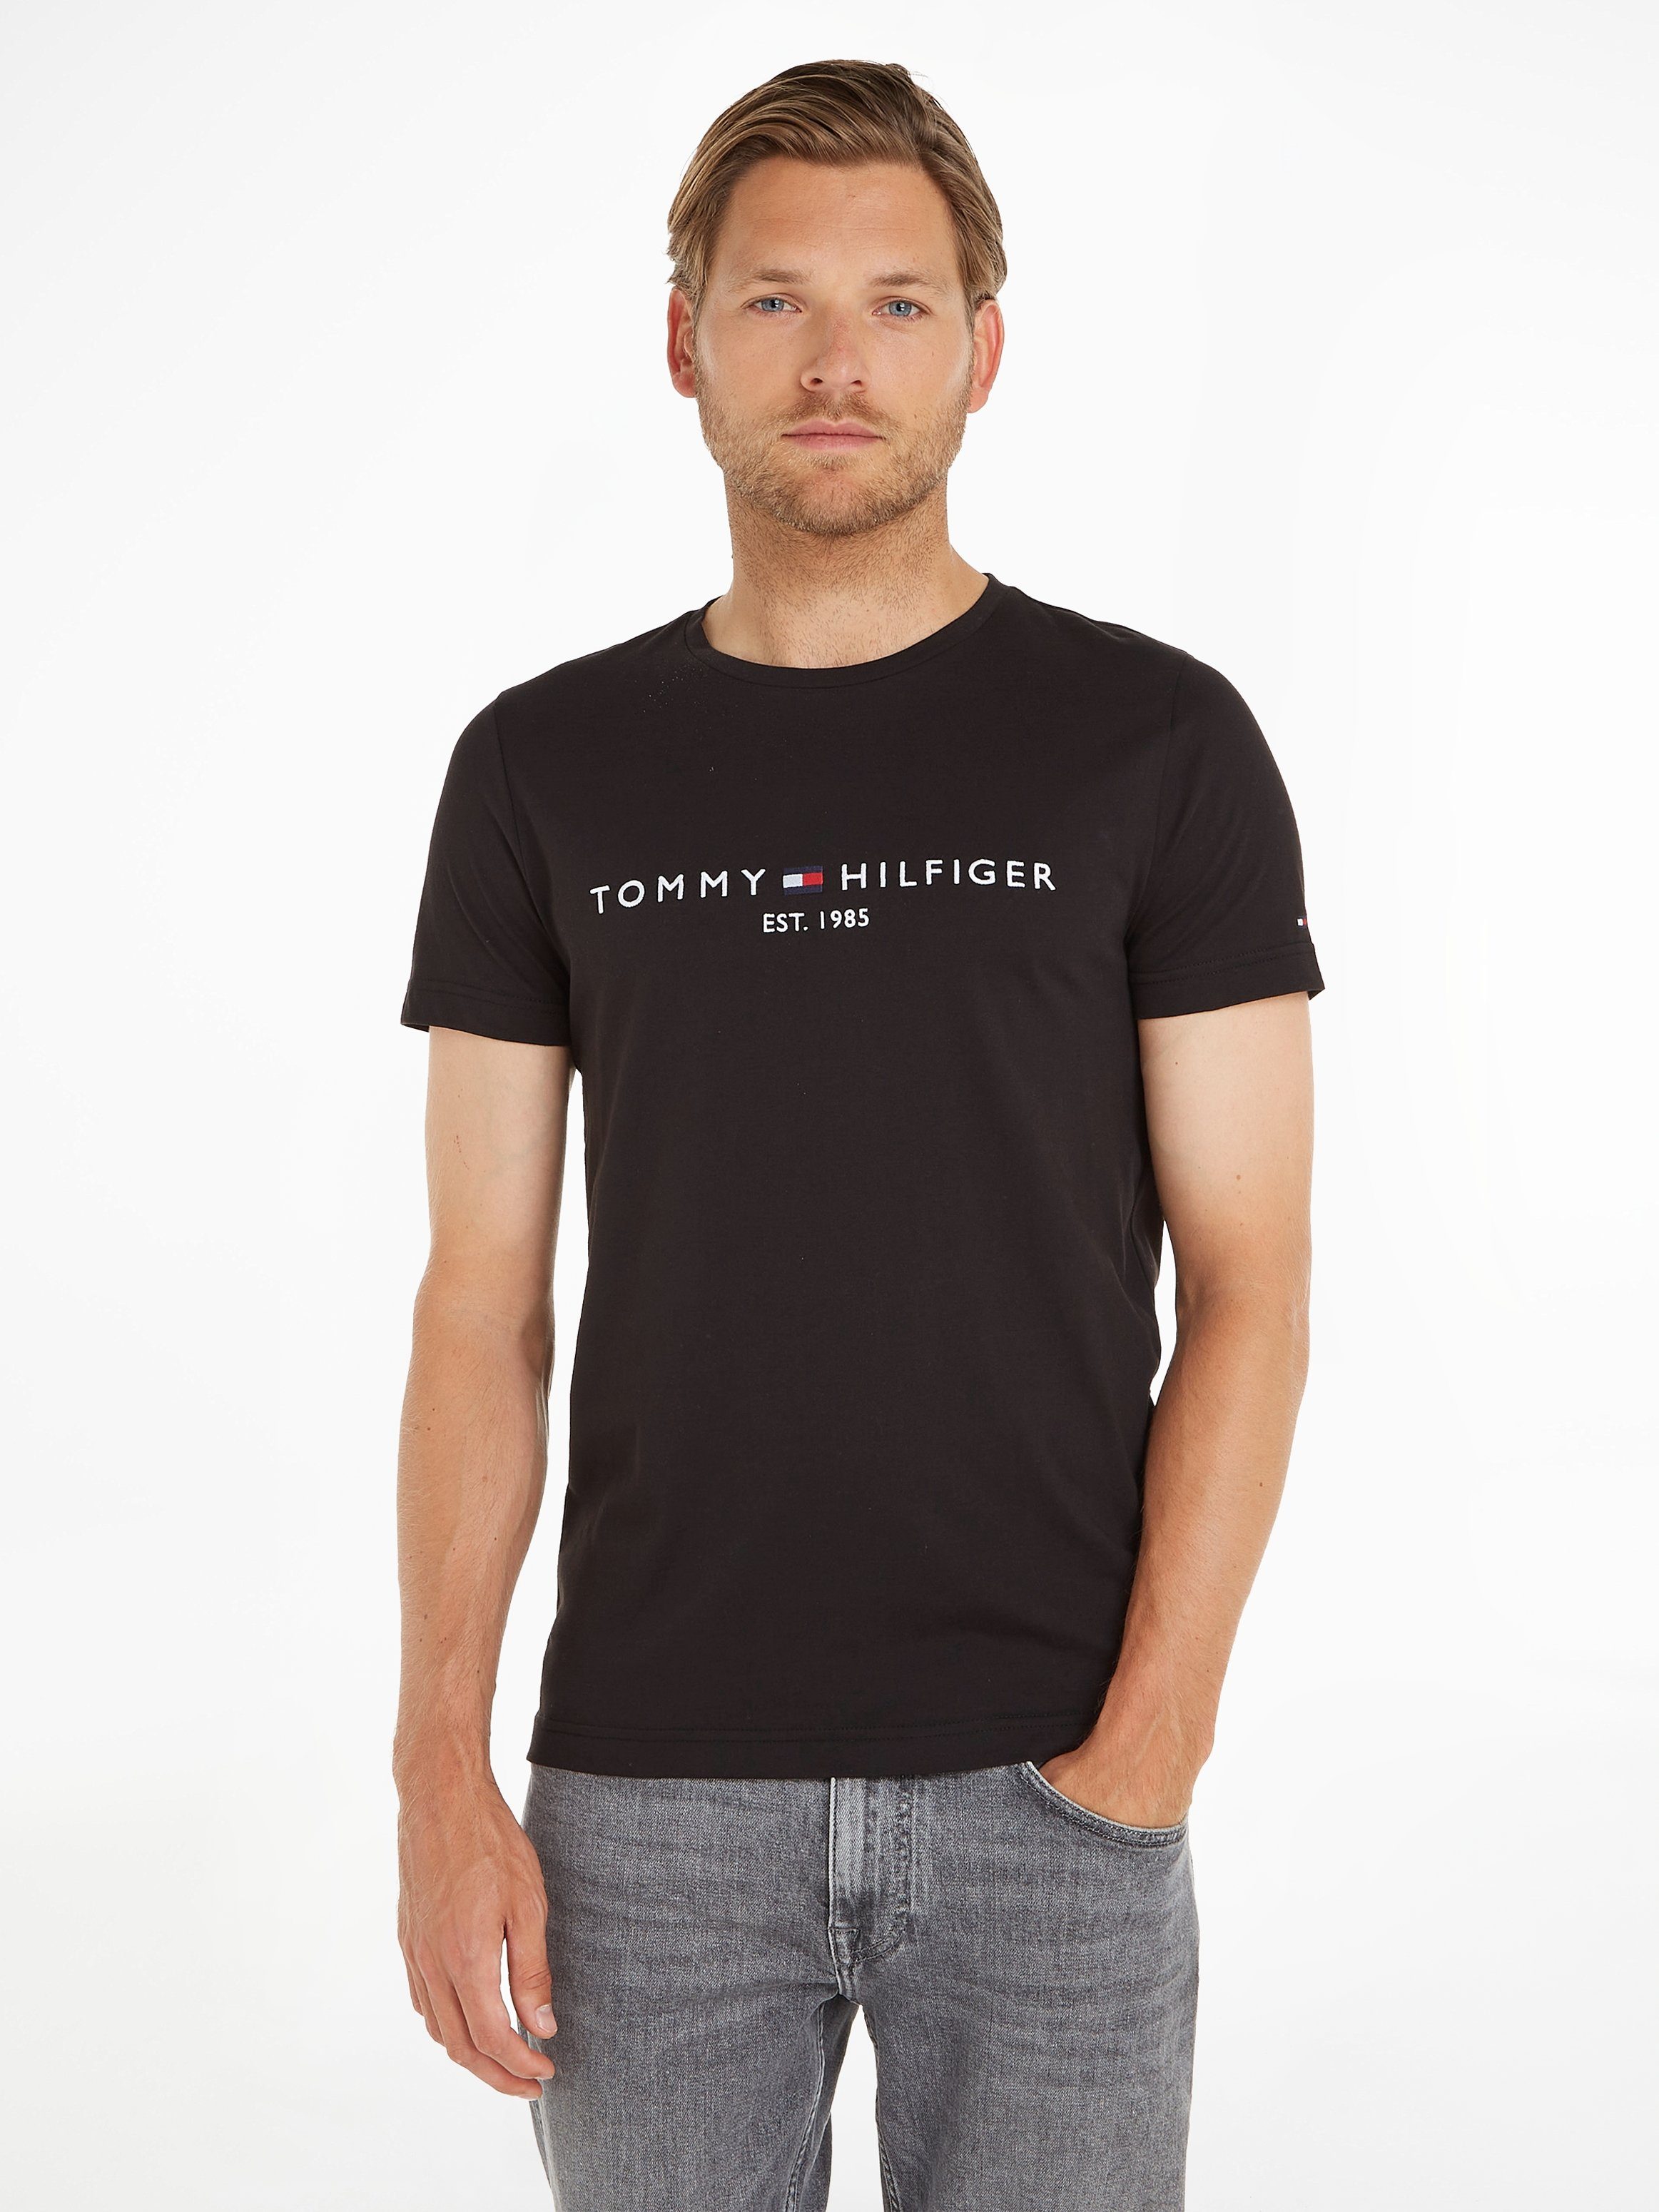 Tommy Hilfiger T-Shirt TEE black FLAG jet HILFIGER TOMMY